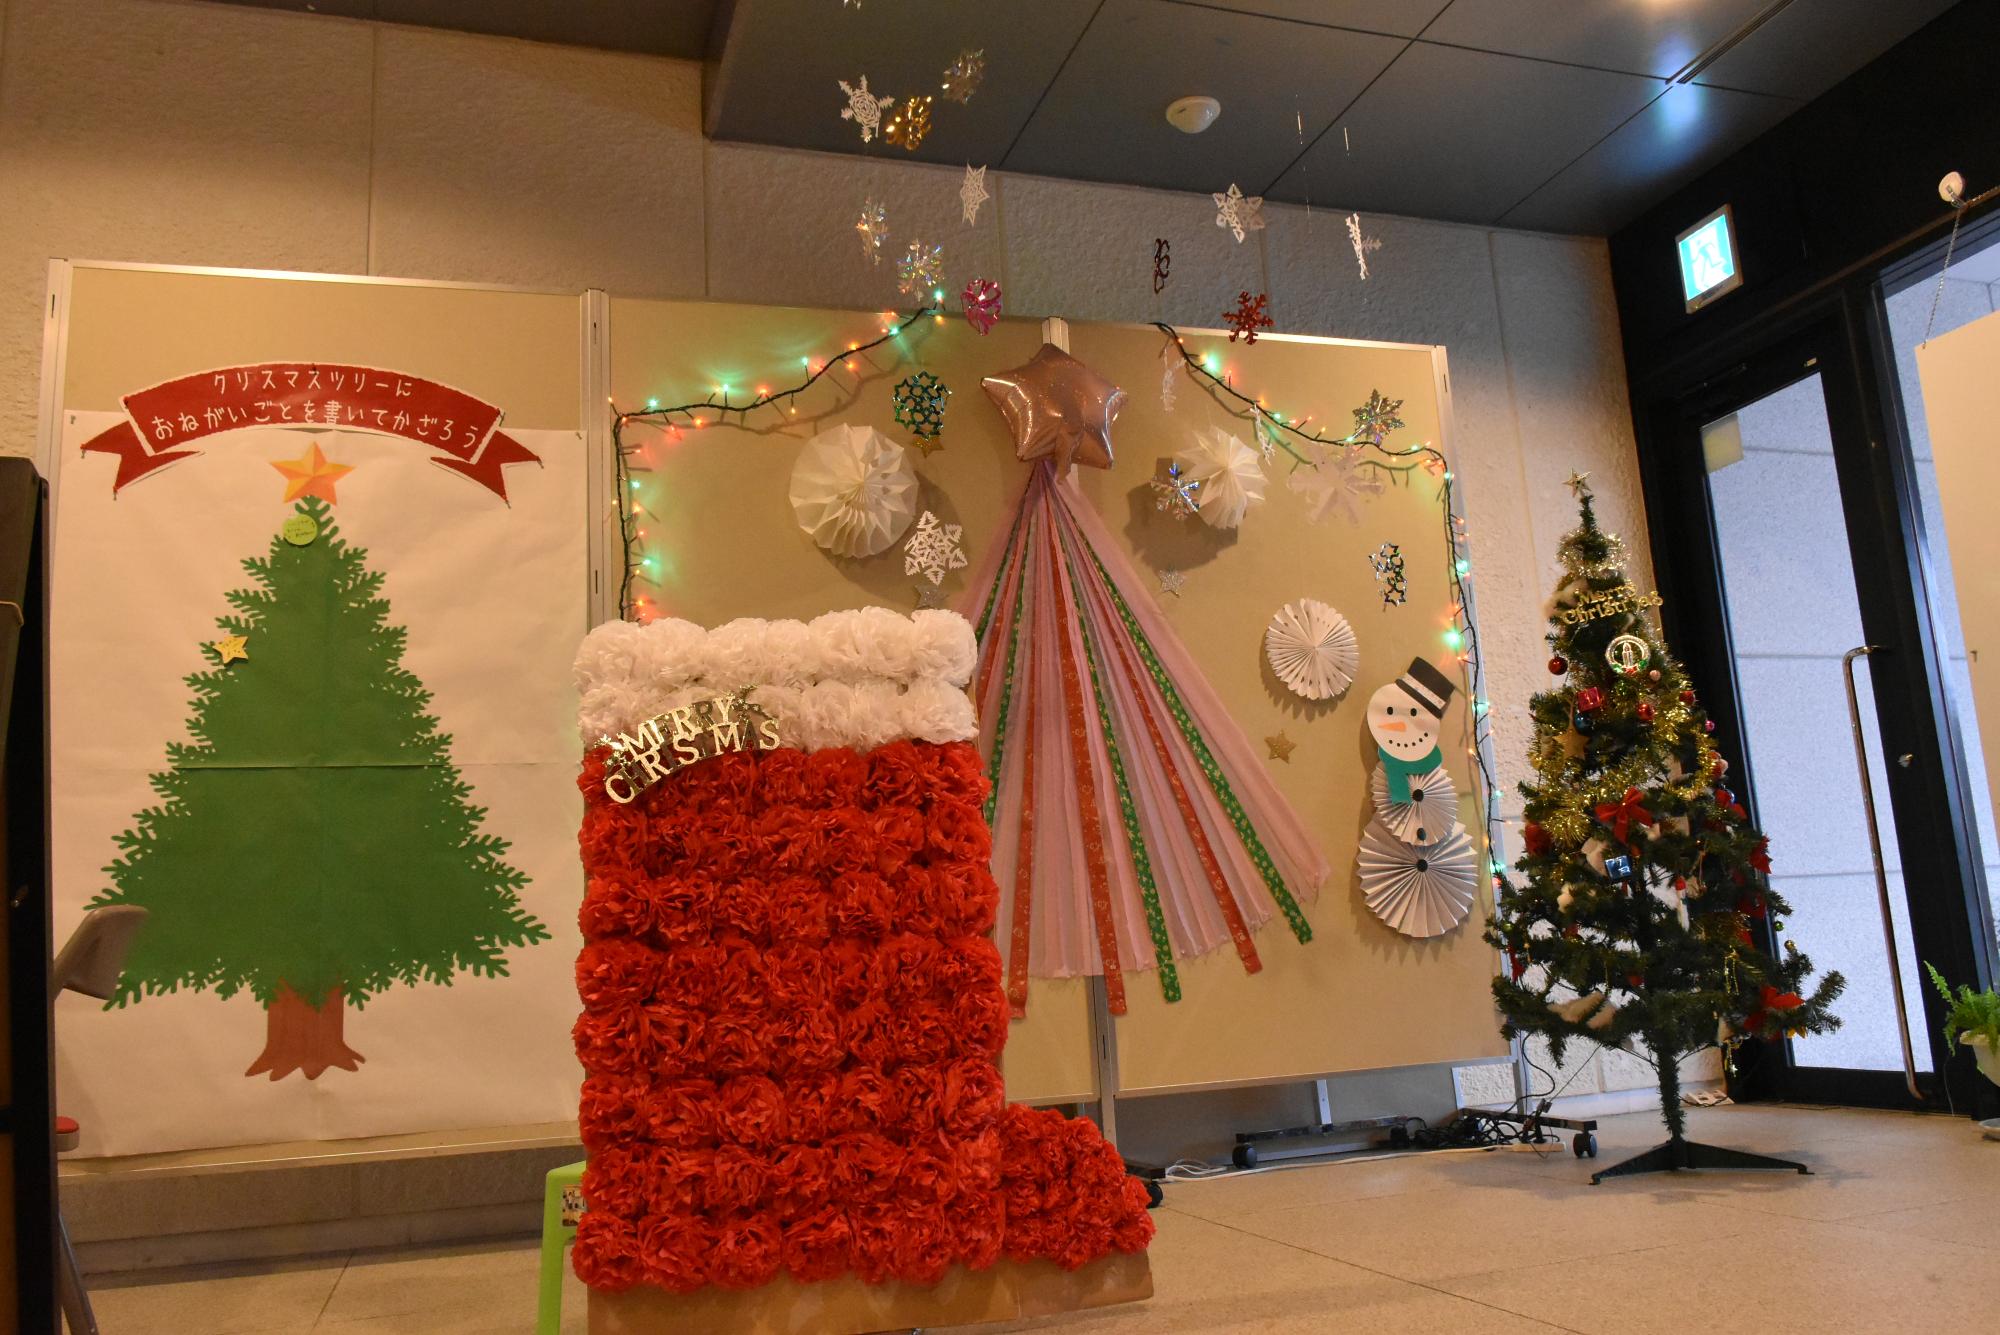 クリスマスフォトコーナーの全体写真。手前に大型クリスマスブーツ、壁面にツリーやクリスマスらしい飾り付けがしてあります。